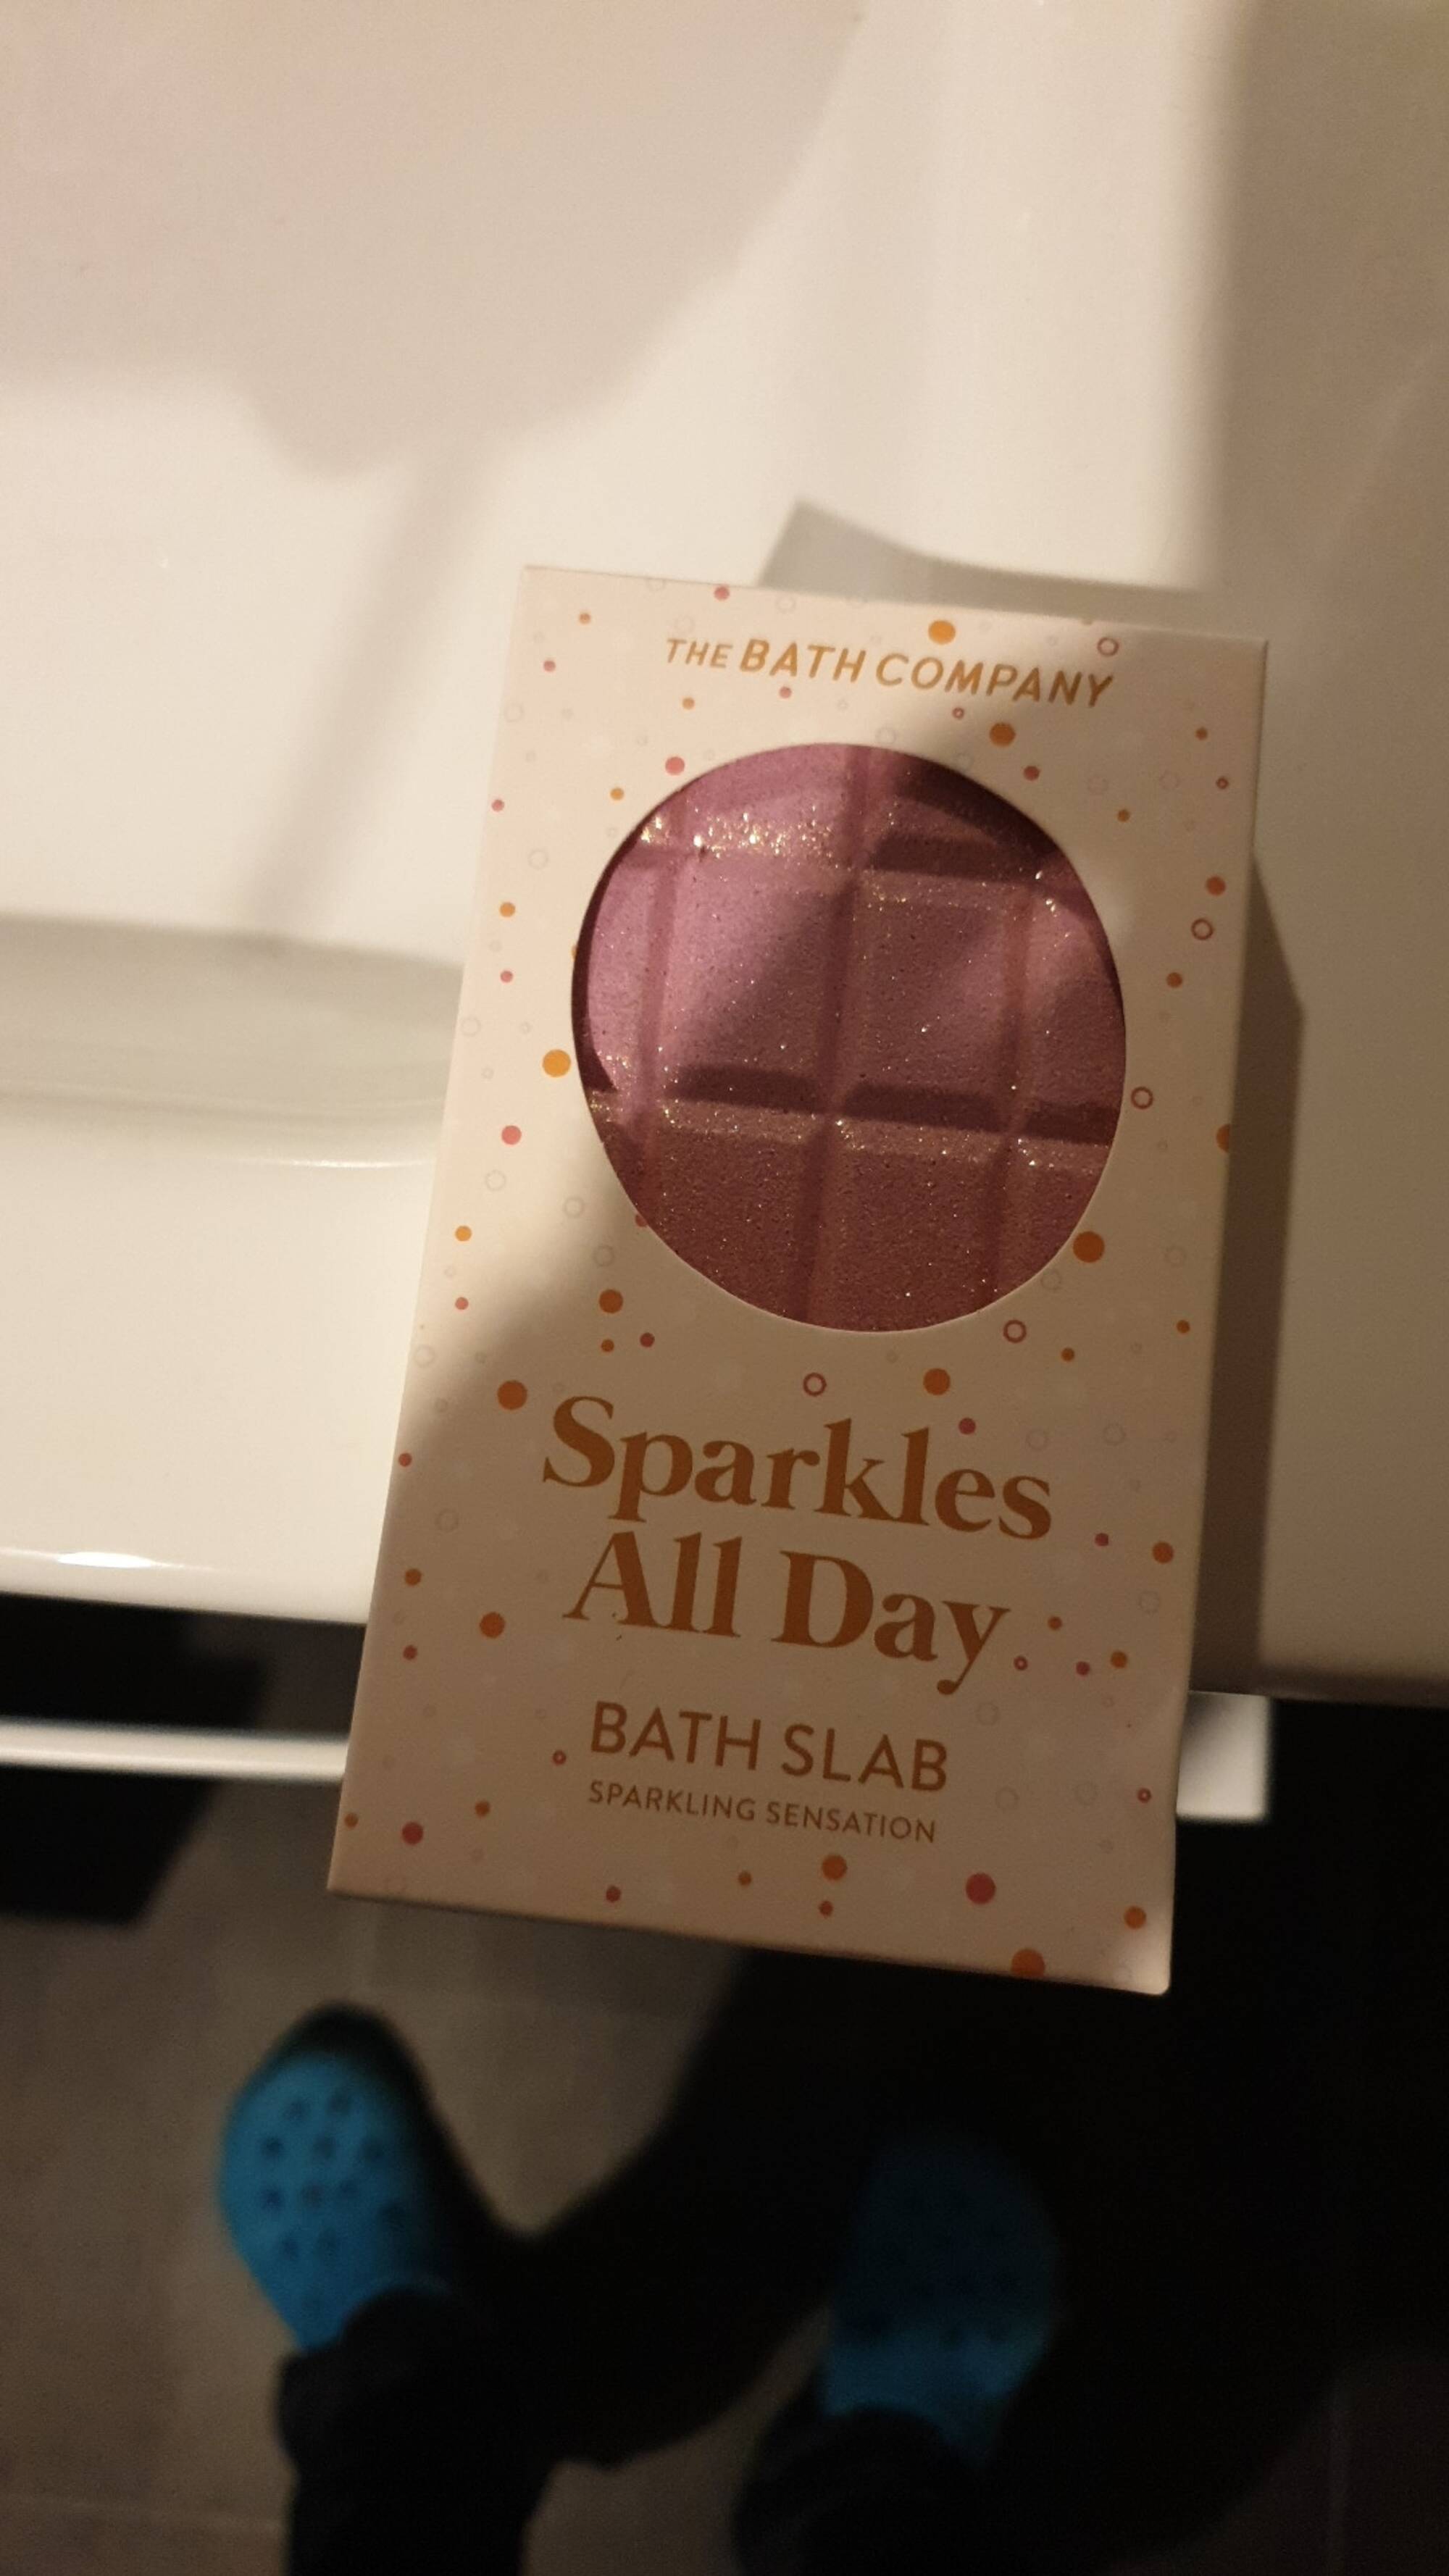 THE BATH COMPANY - Sparkles all day - Bath slab